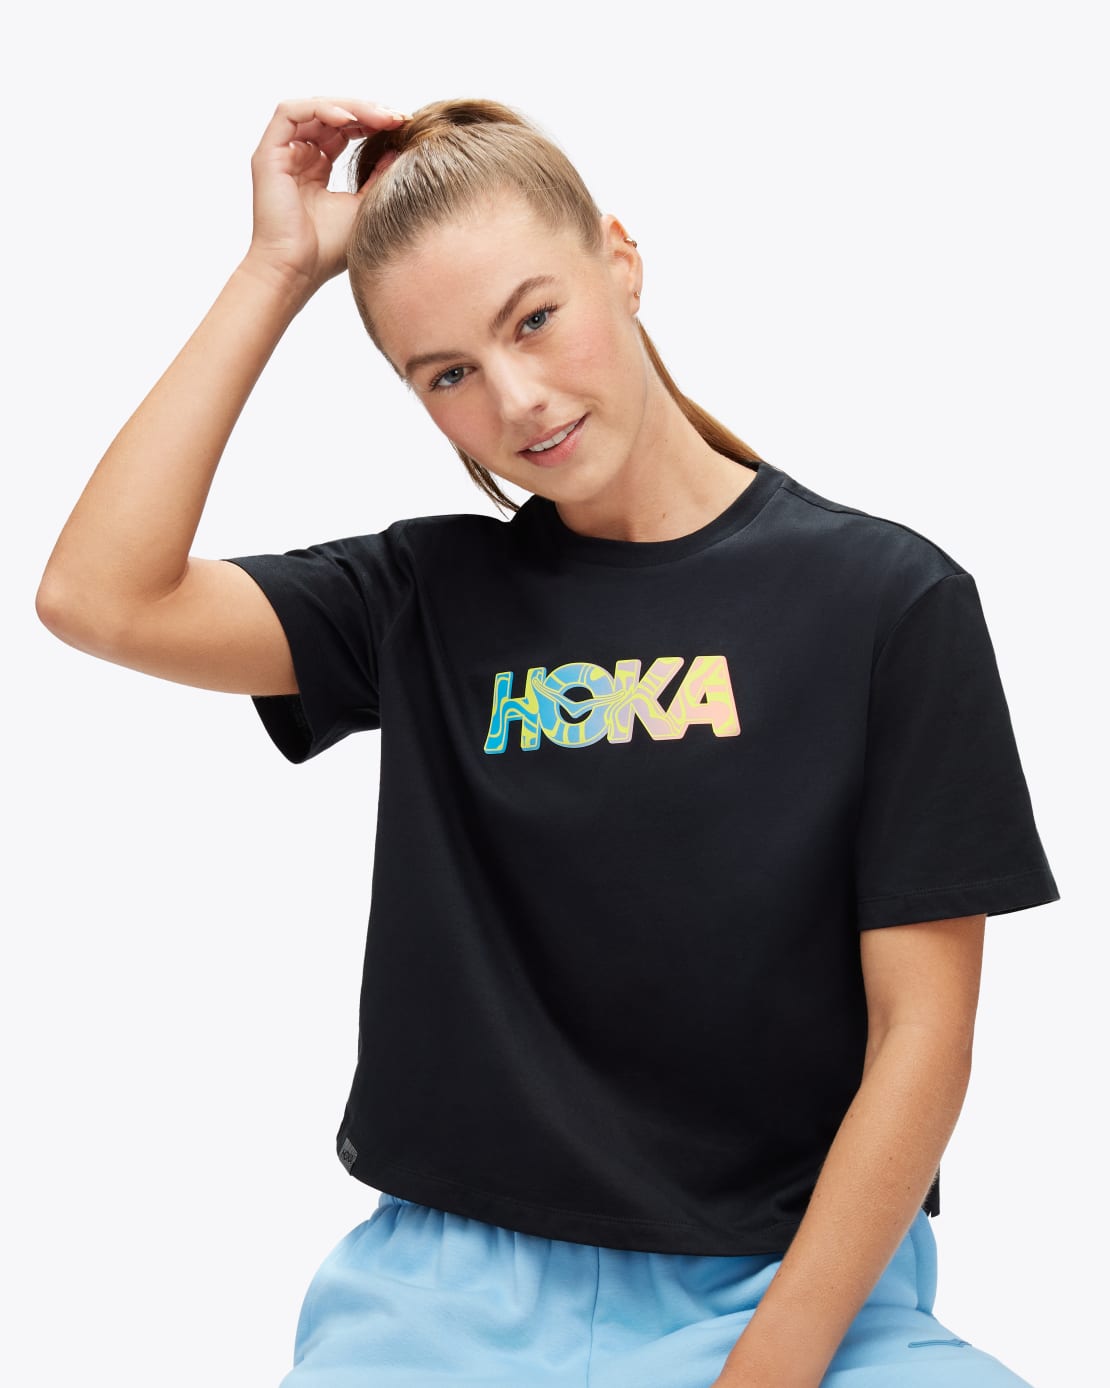 HOKA ONE ONE® HOKA Topo Logo Gpx SS Tee for Women | HOKA ONE ONE®